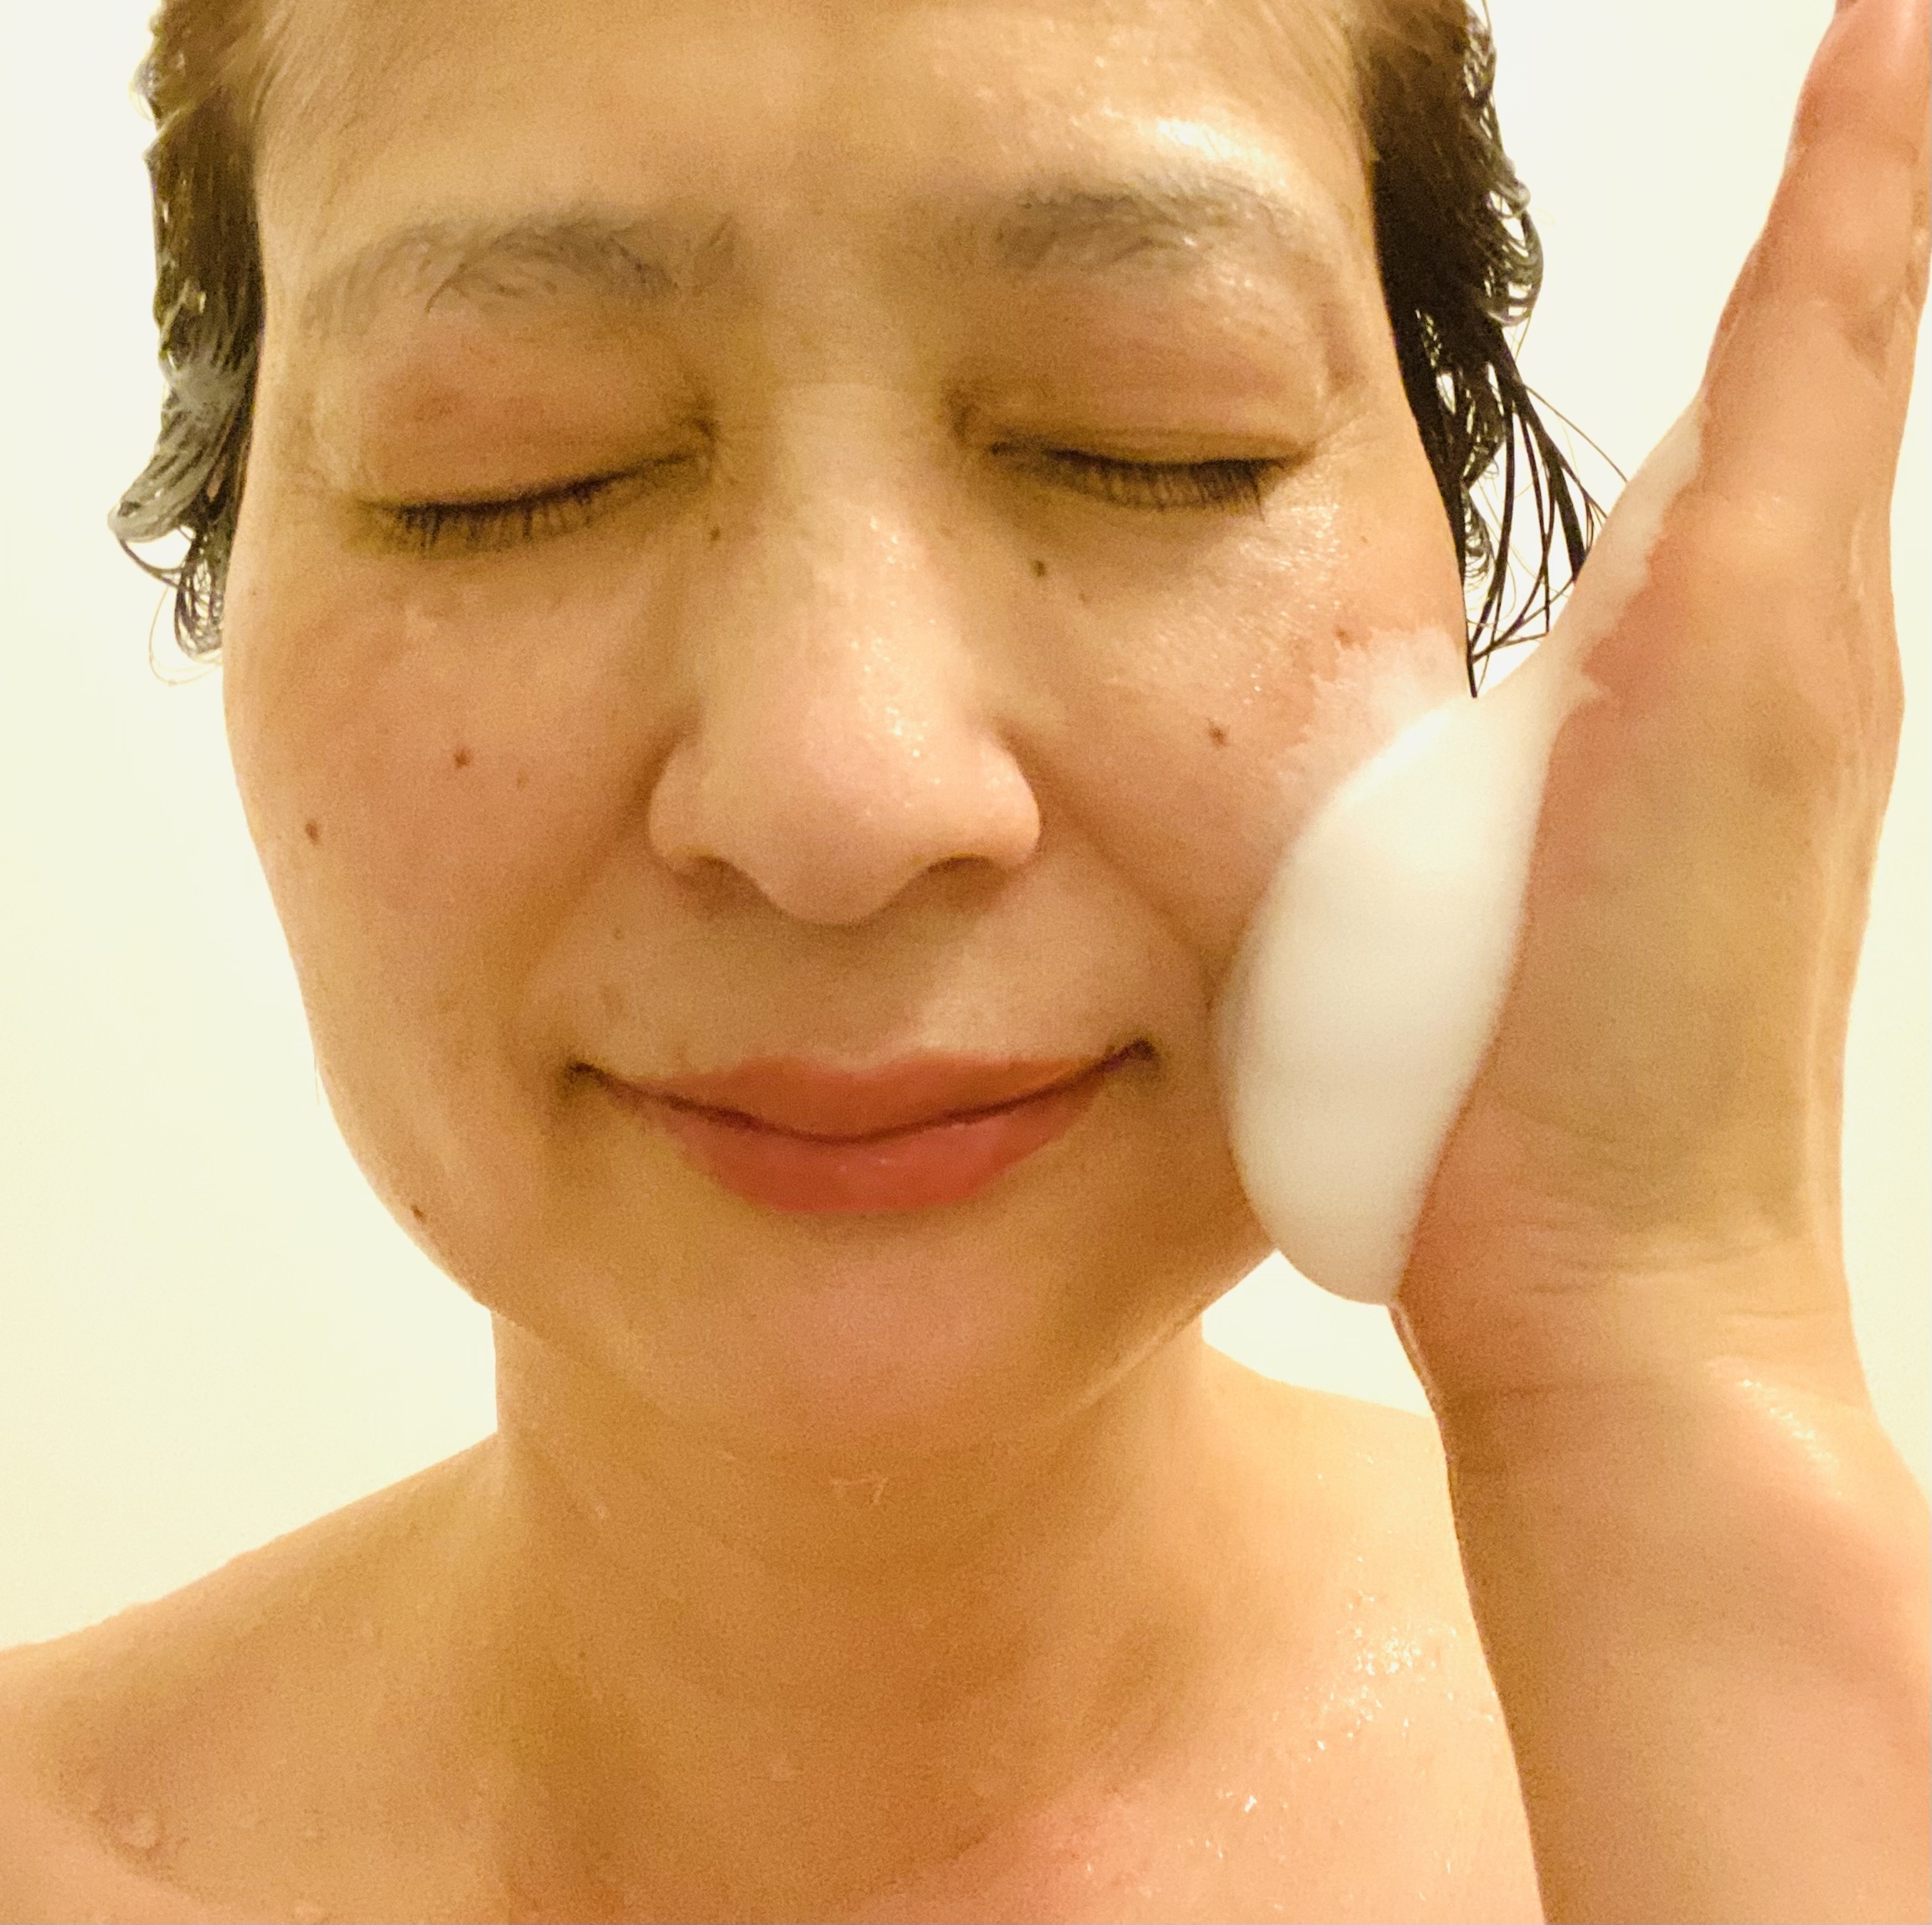 ビューティモイスチャー クリーミー泡洗顔料を使ったトラネコさんのクチコミ画像4